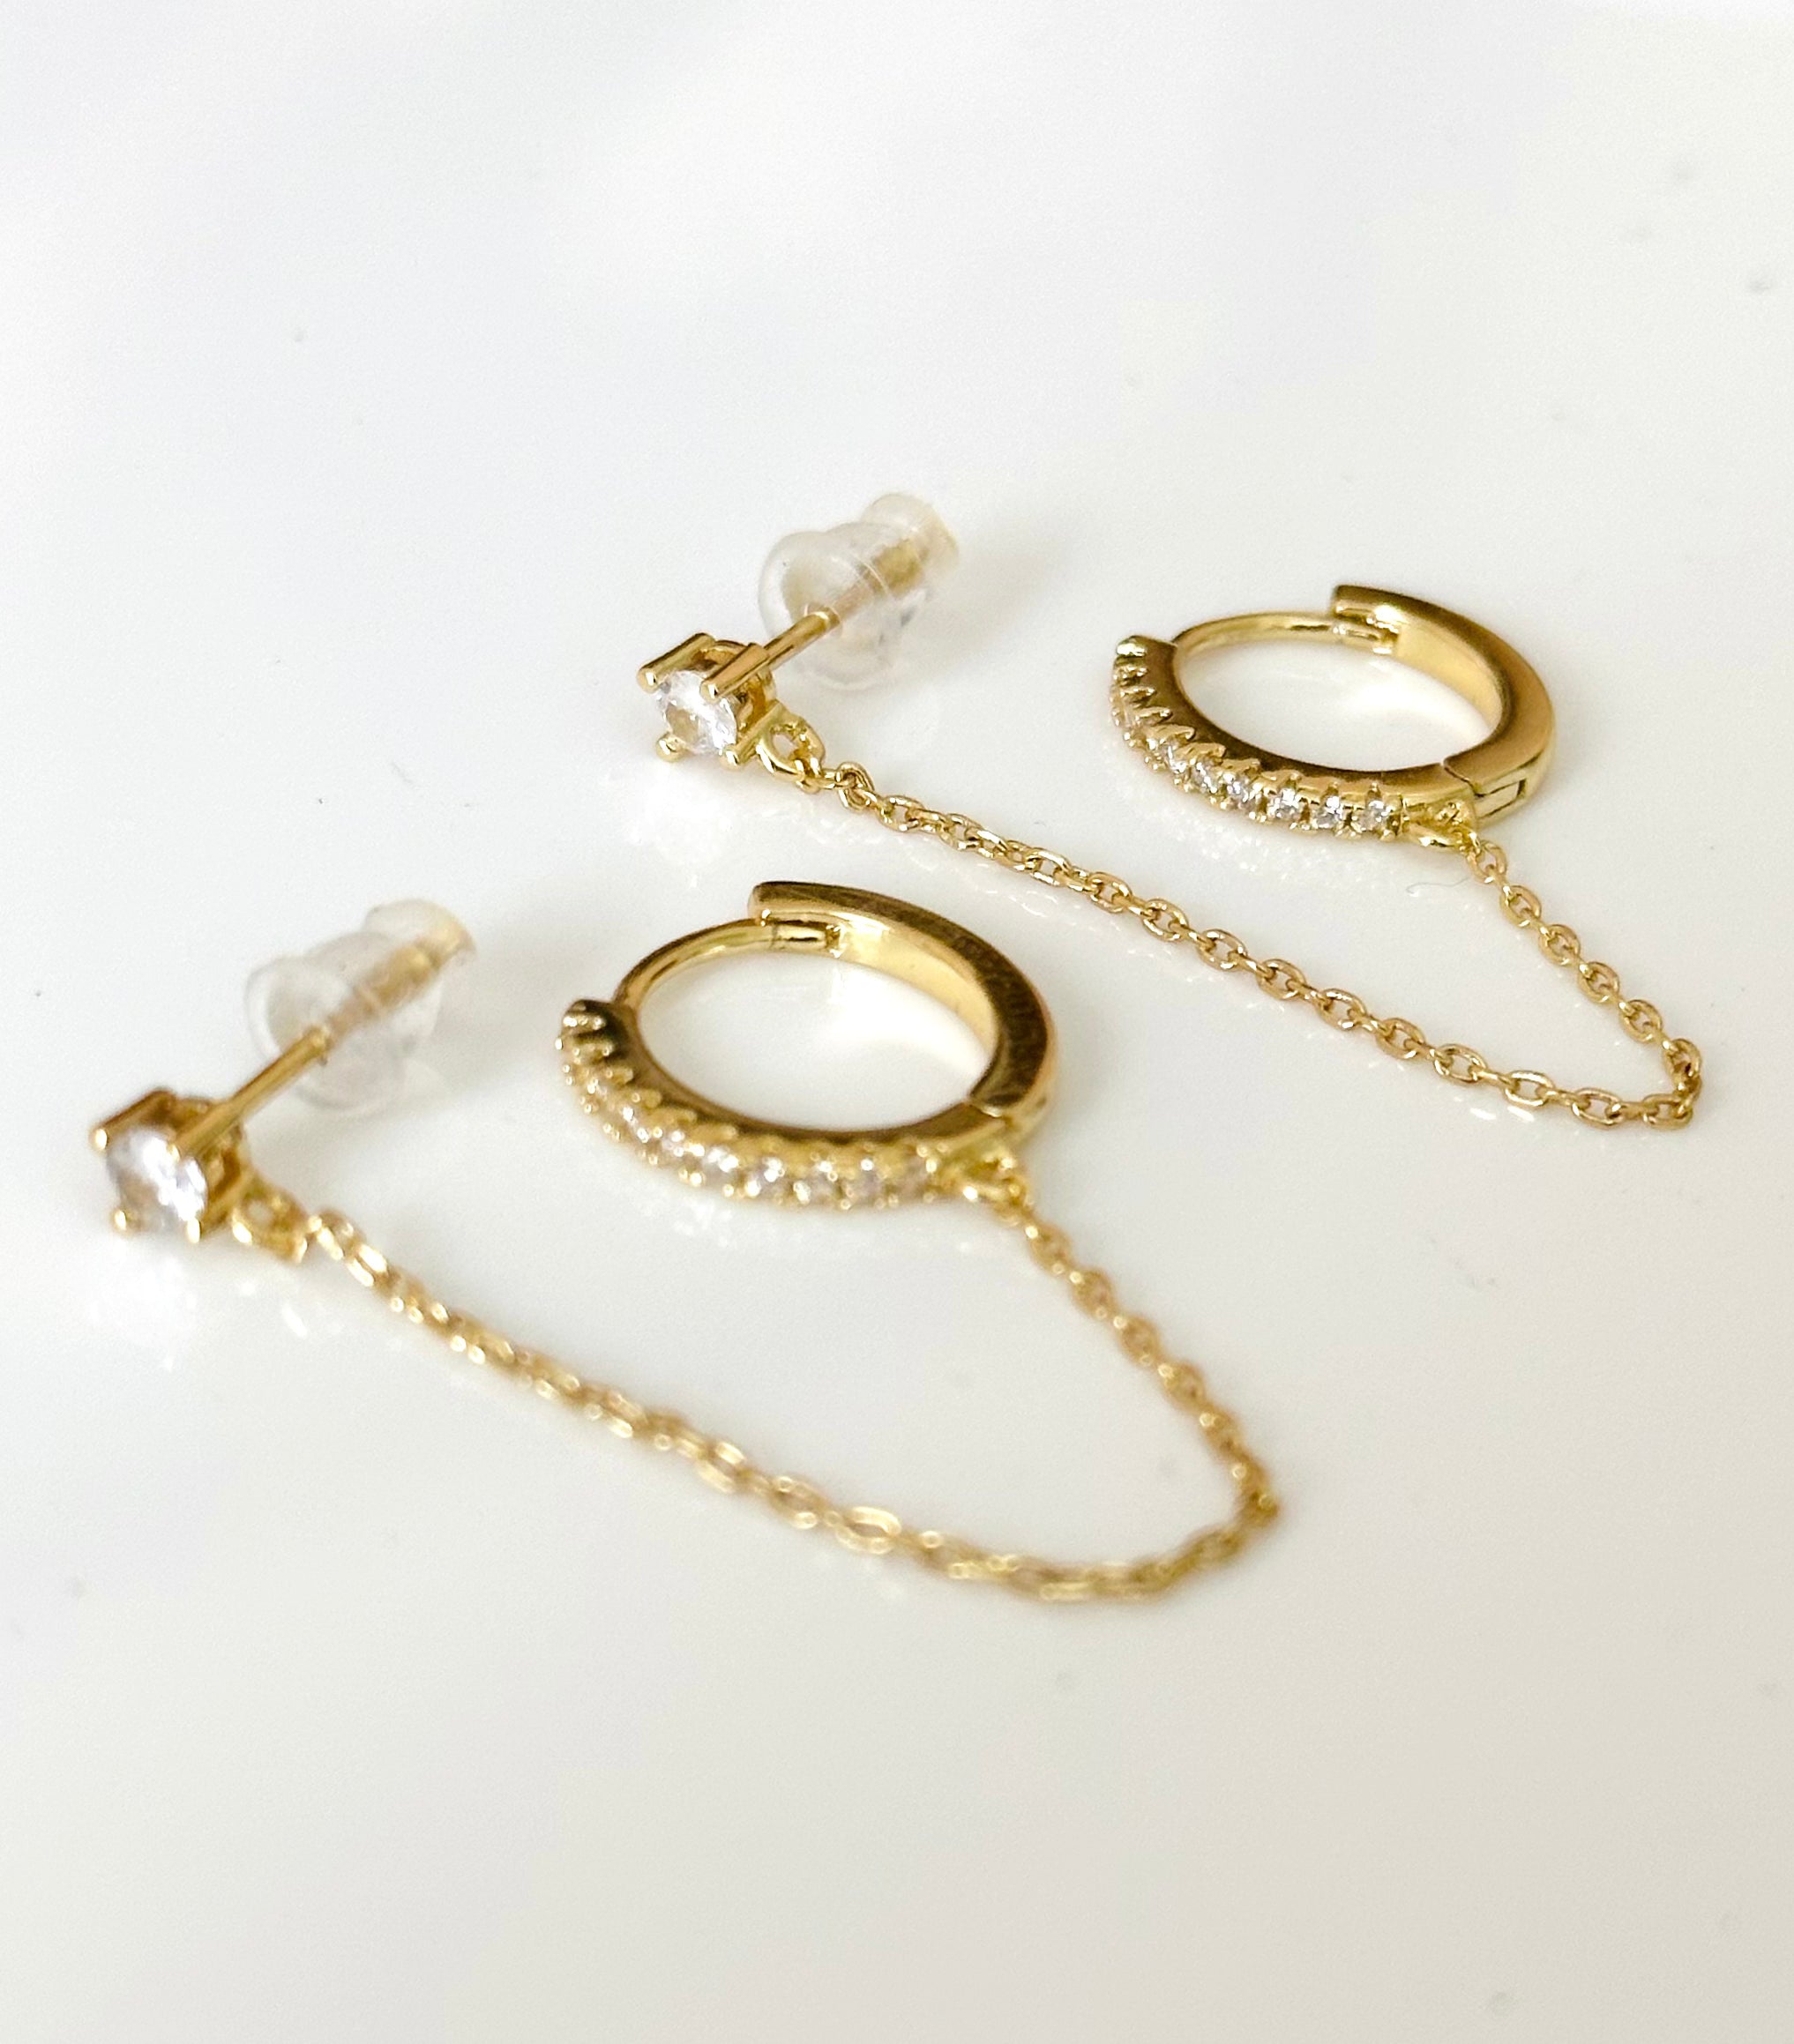 Luxe Double Chain Earrings